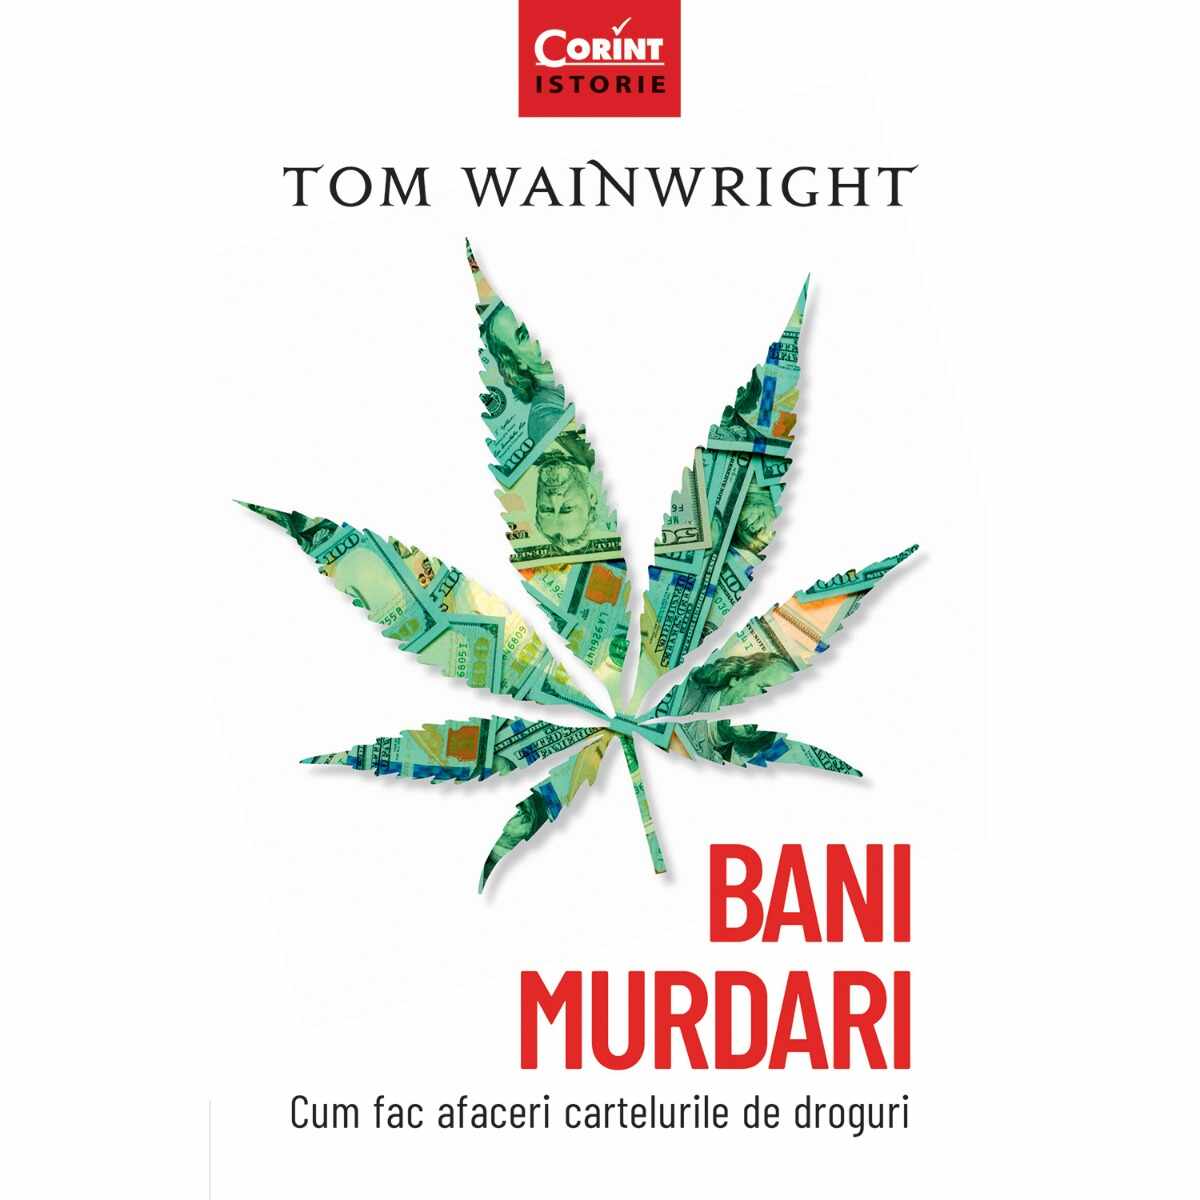 Carte Editura Corint, Bani murdari. Cum fac afaceri cartelurile de droguri, Tom Wainwright